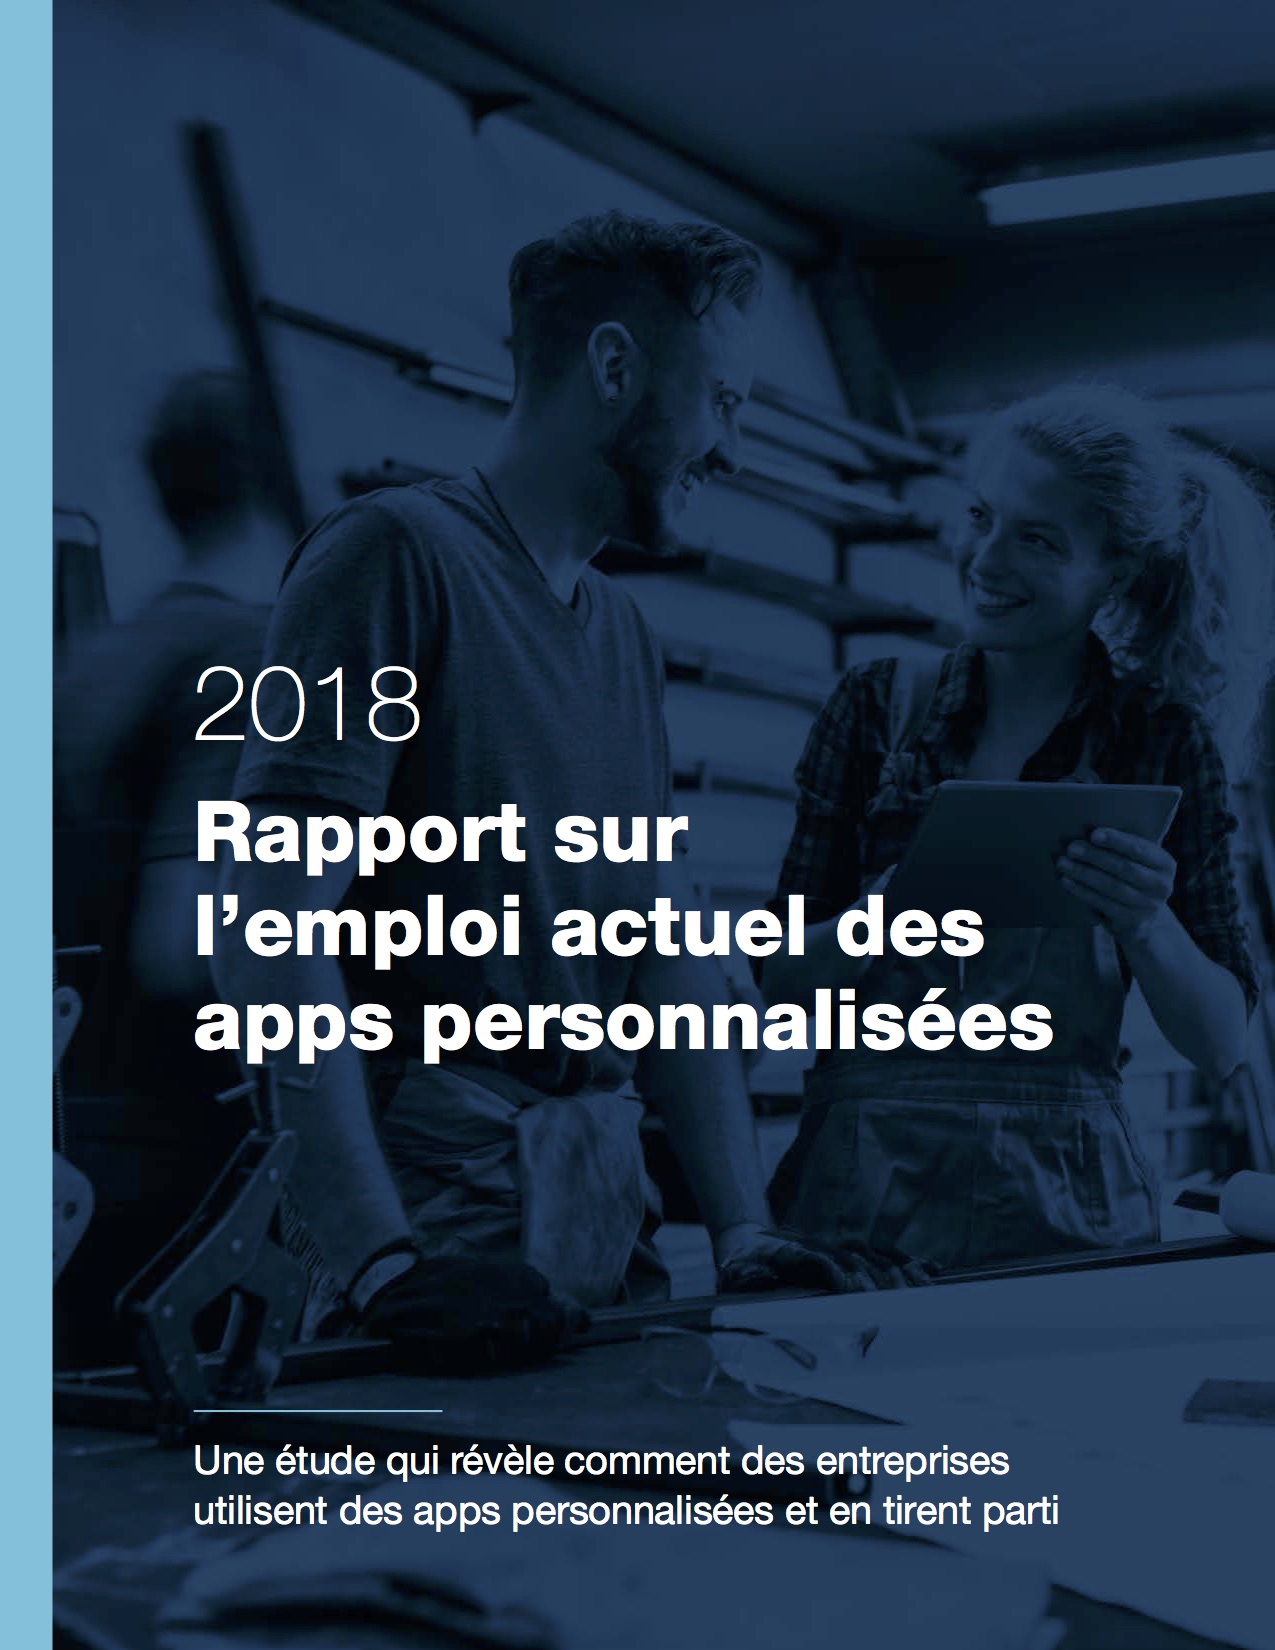 Couverture du rapport 2018 sur l’emploi actuel des apps personnalisées